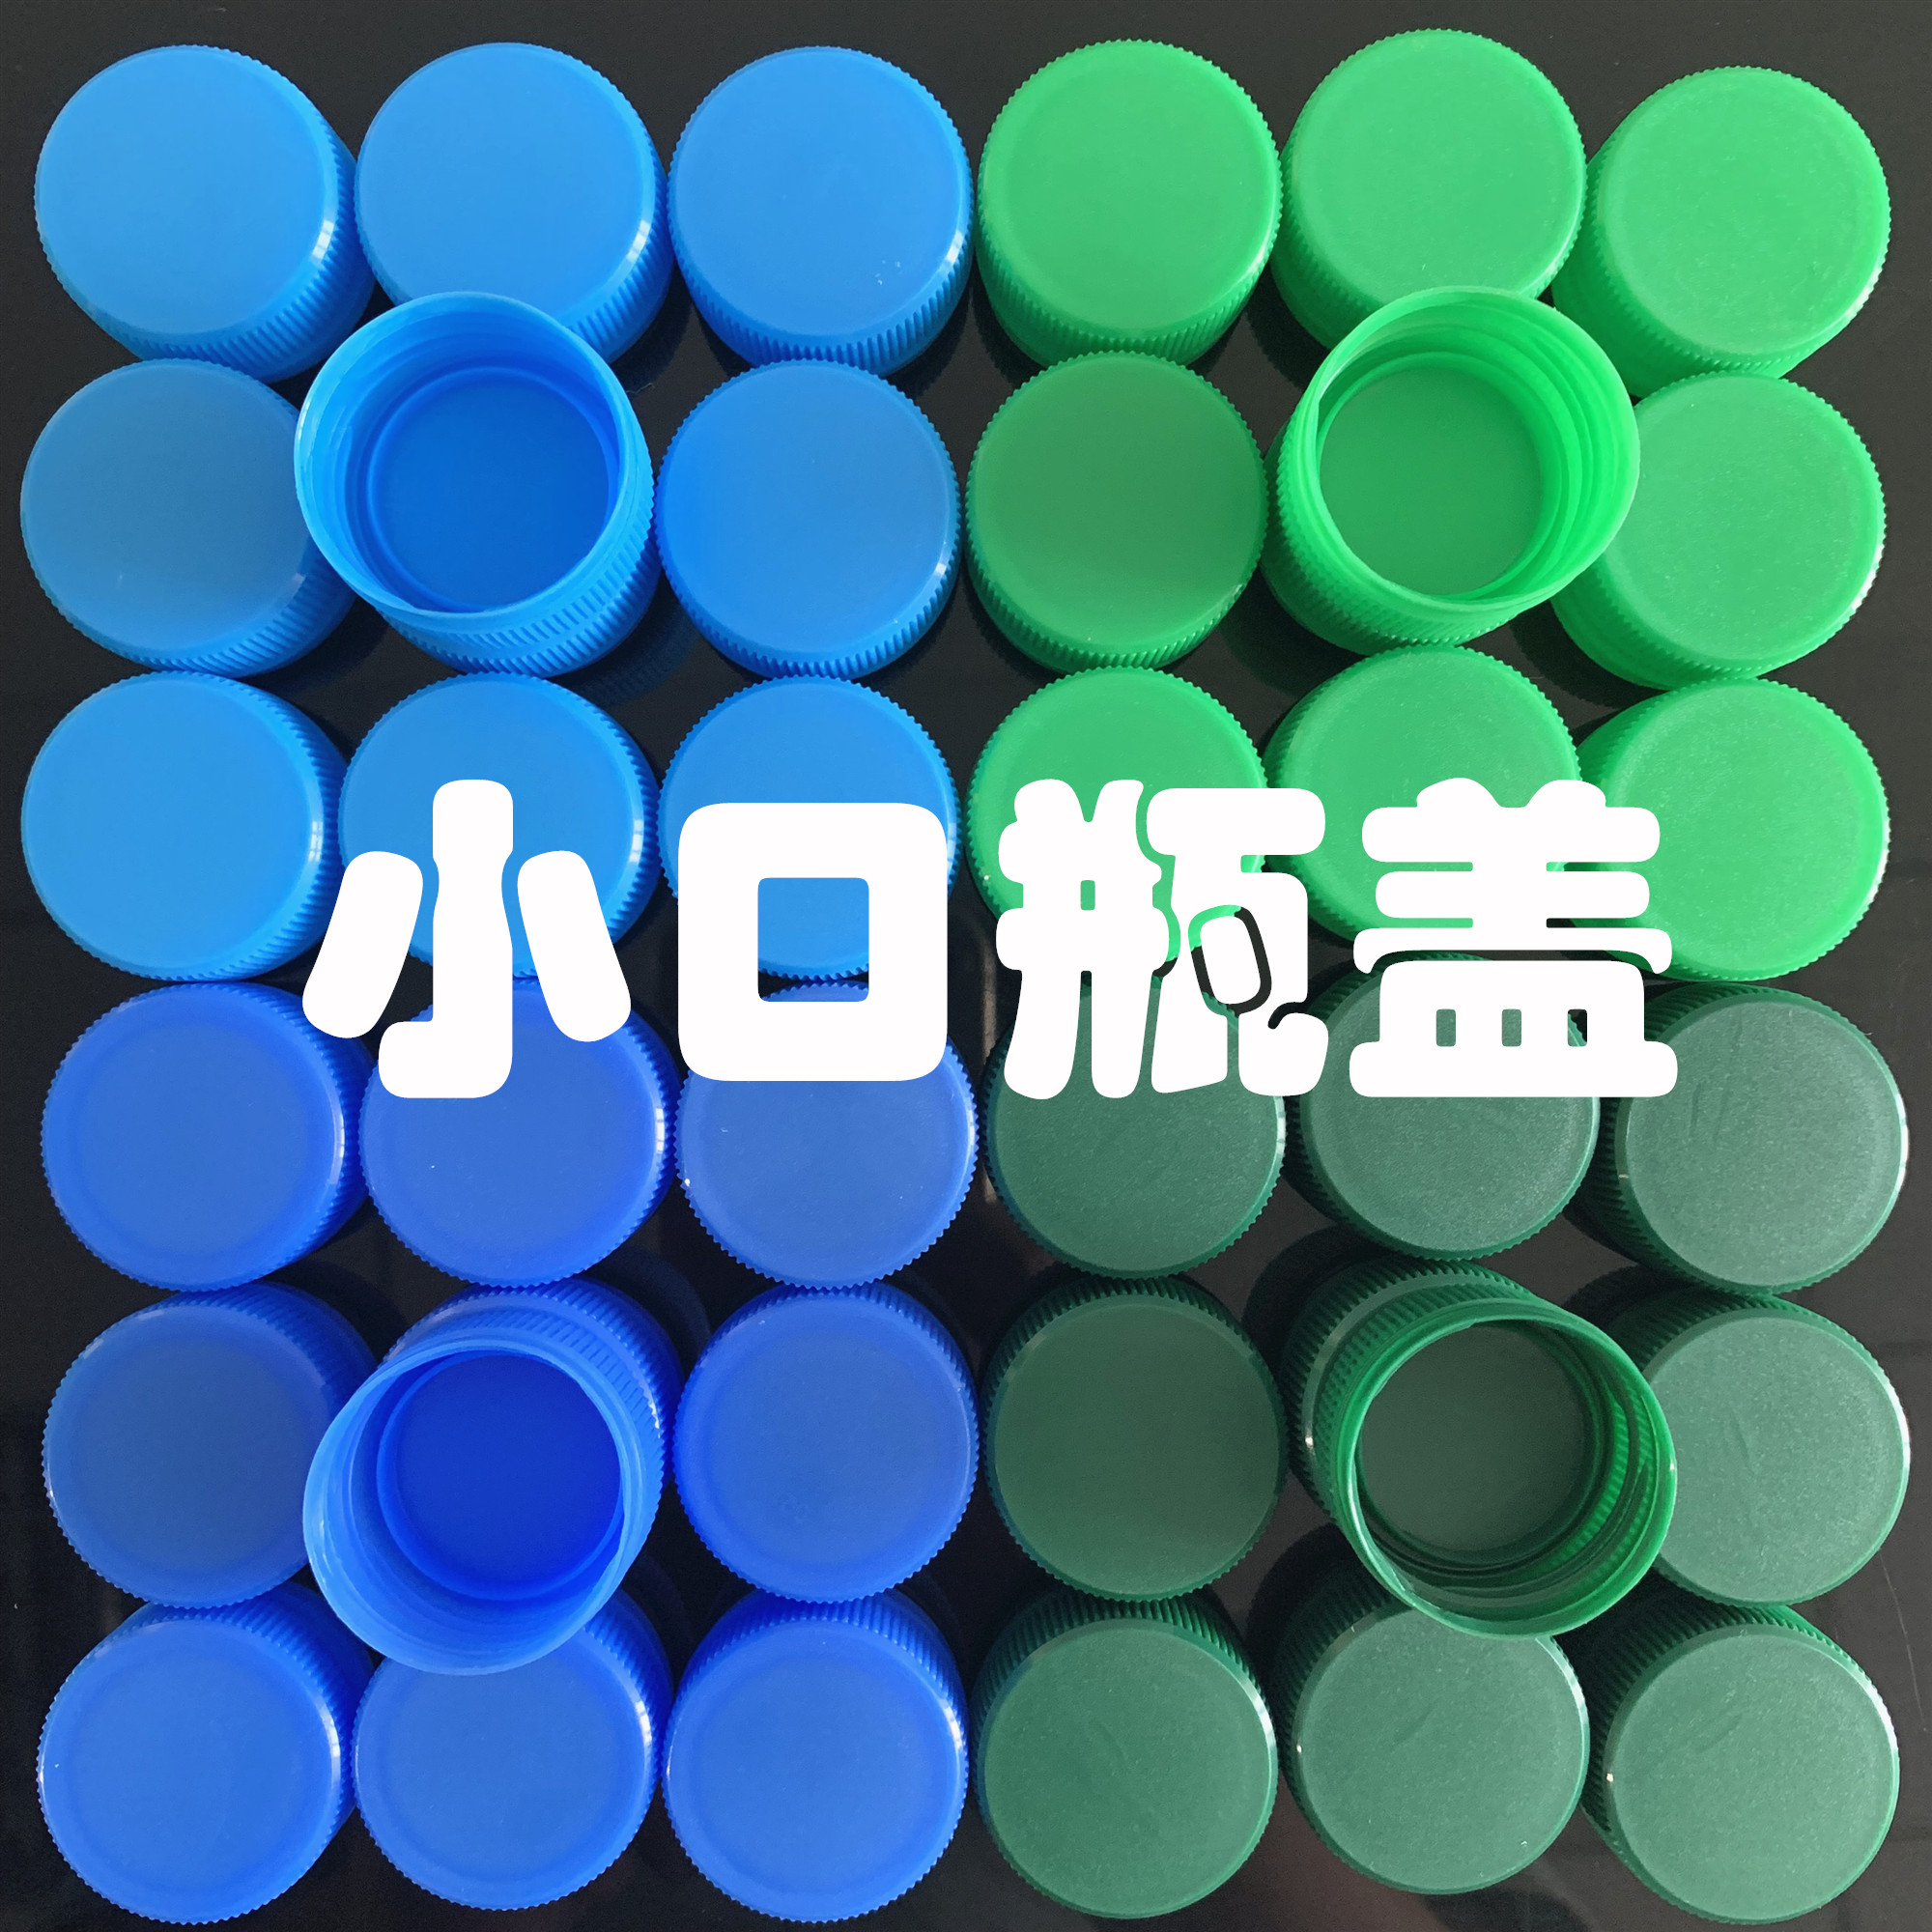 蓝色绿色彩纯净水矿泉水瓶盖幼儿园创意手工拼图材料饮料盖子早教